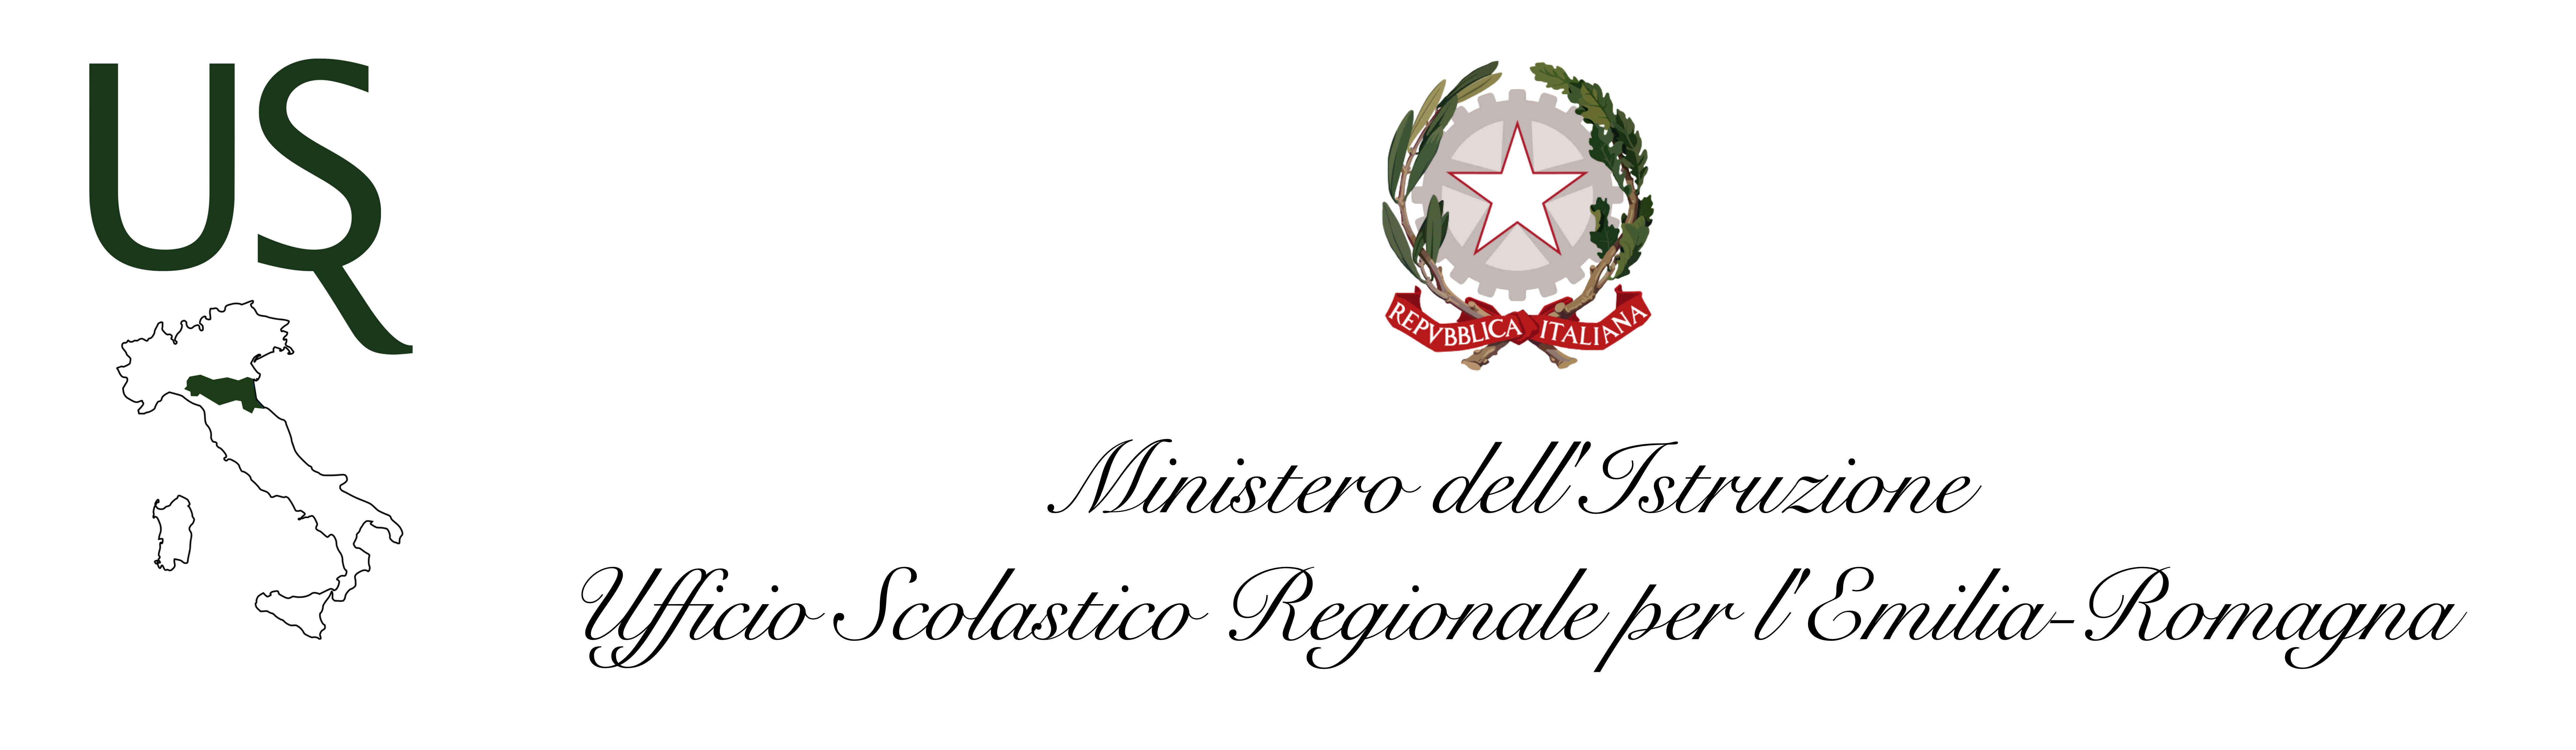 USR Emilia Romagna 2021